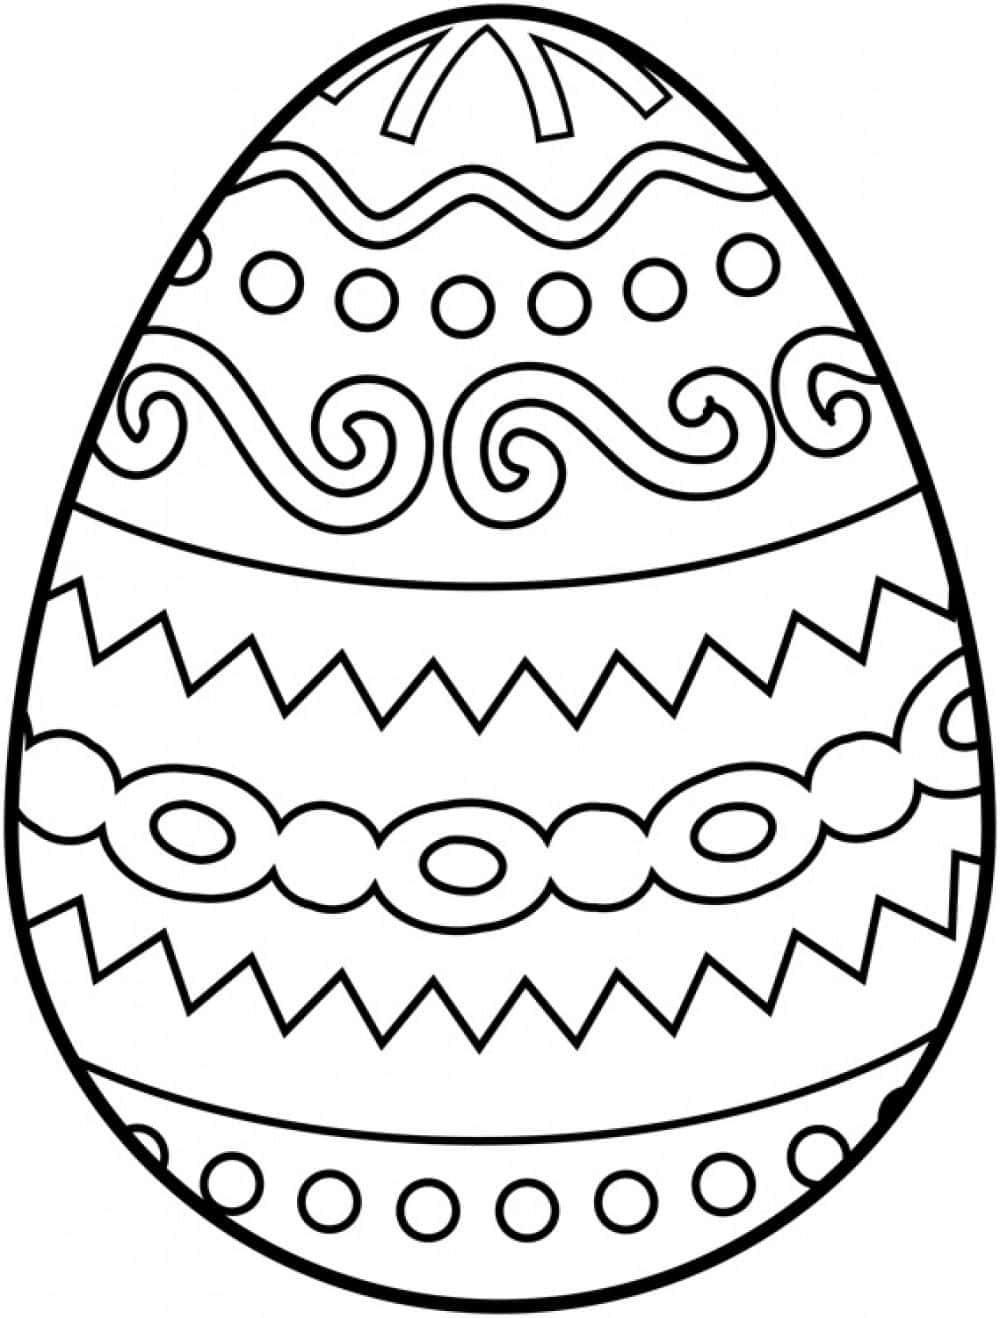 Diseñode Huevos De Pascua. Imagen Para Colorear De Pascua.